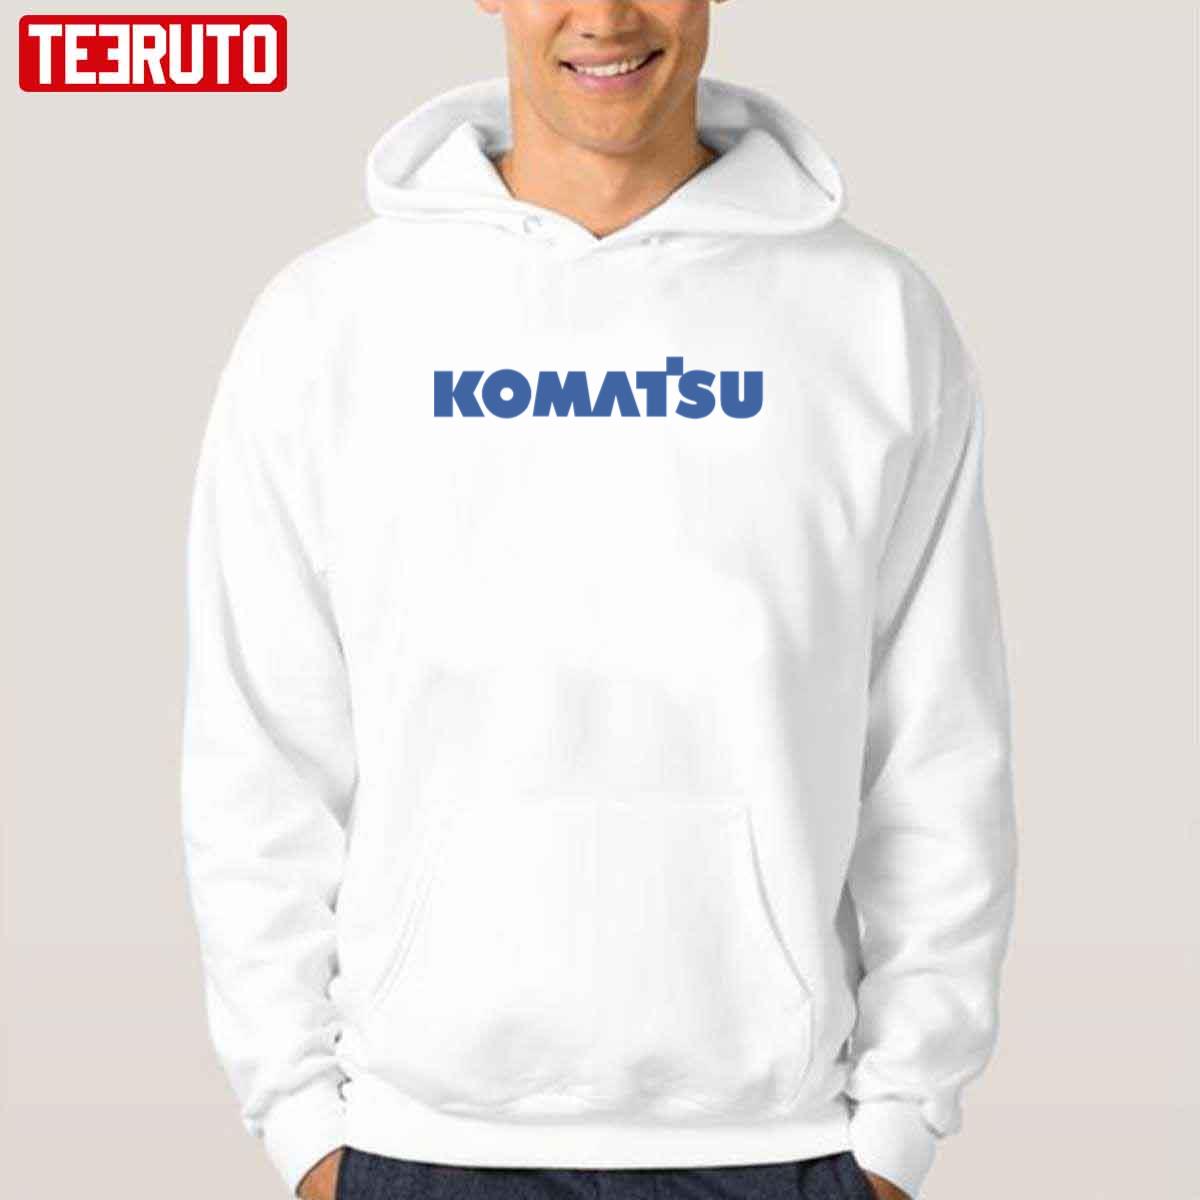 Komatsu Heavy Equipment Unisex T-Shirt